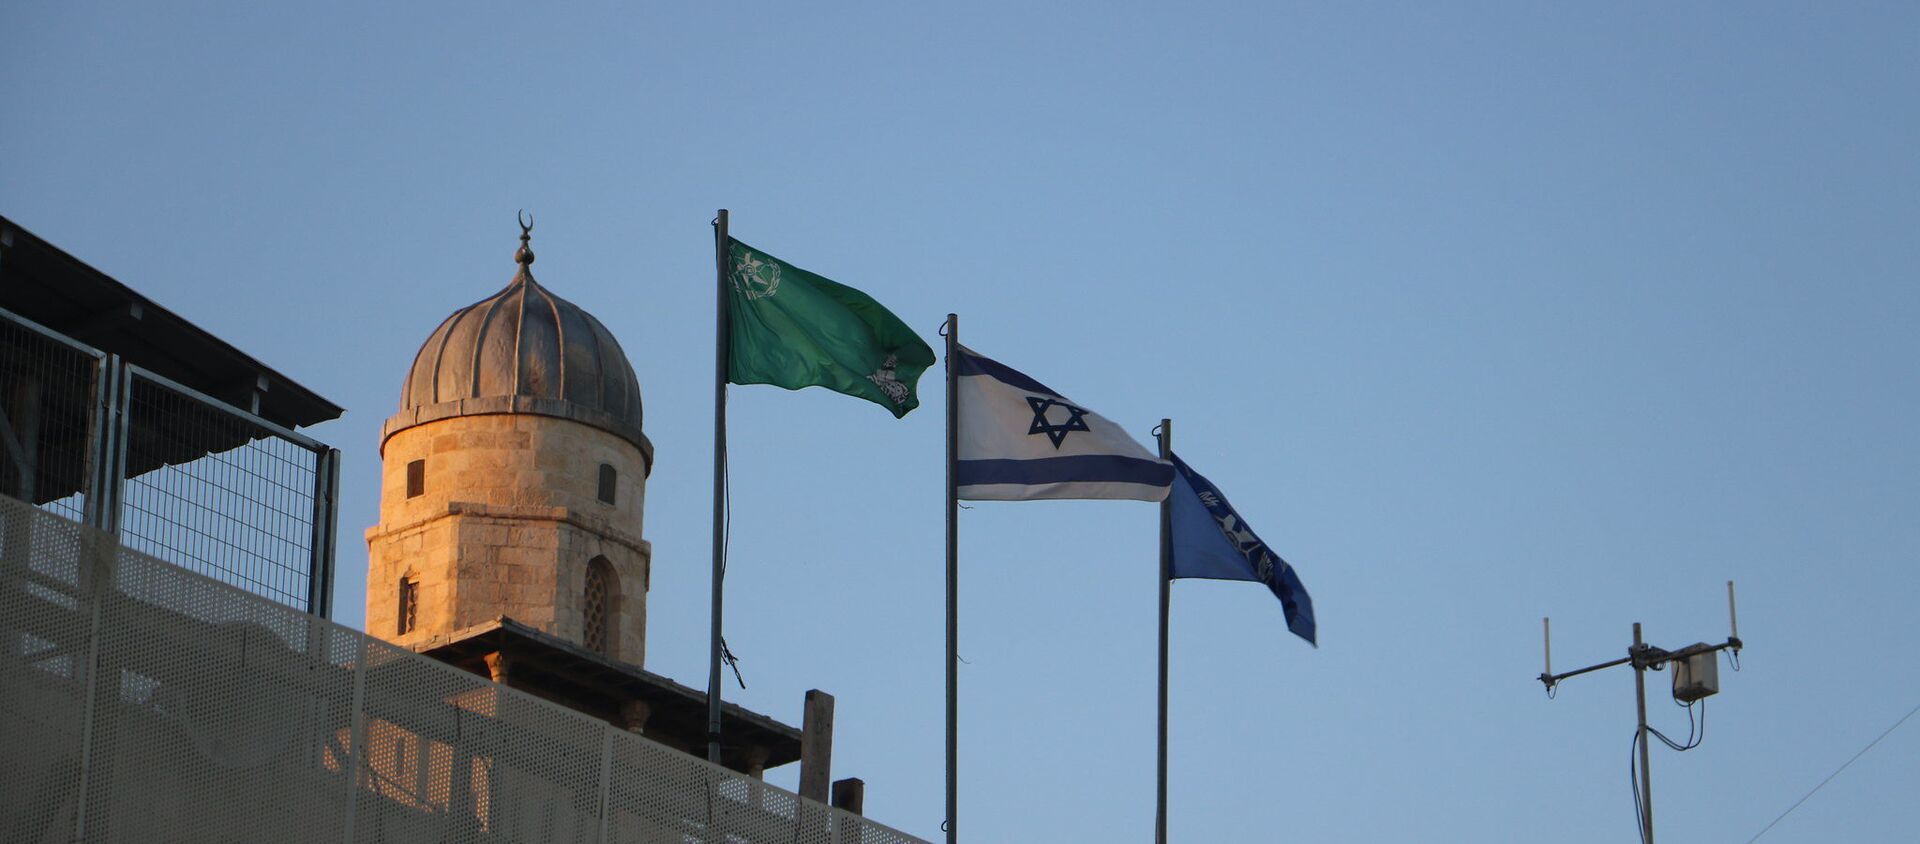 Flags along the Western Wall in Jerusalem, Israel - Sputnik International, 1920, 23.04.2021